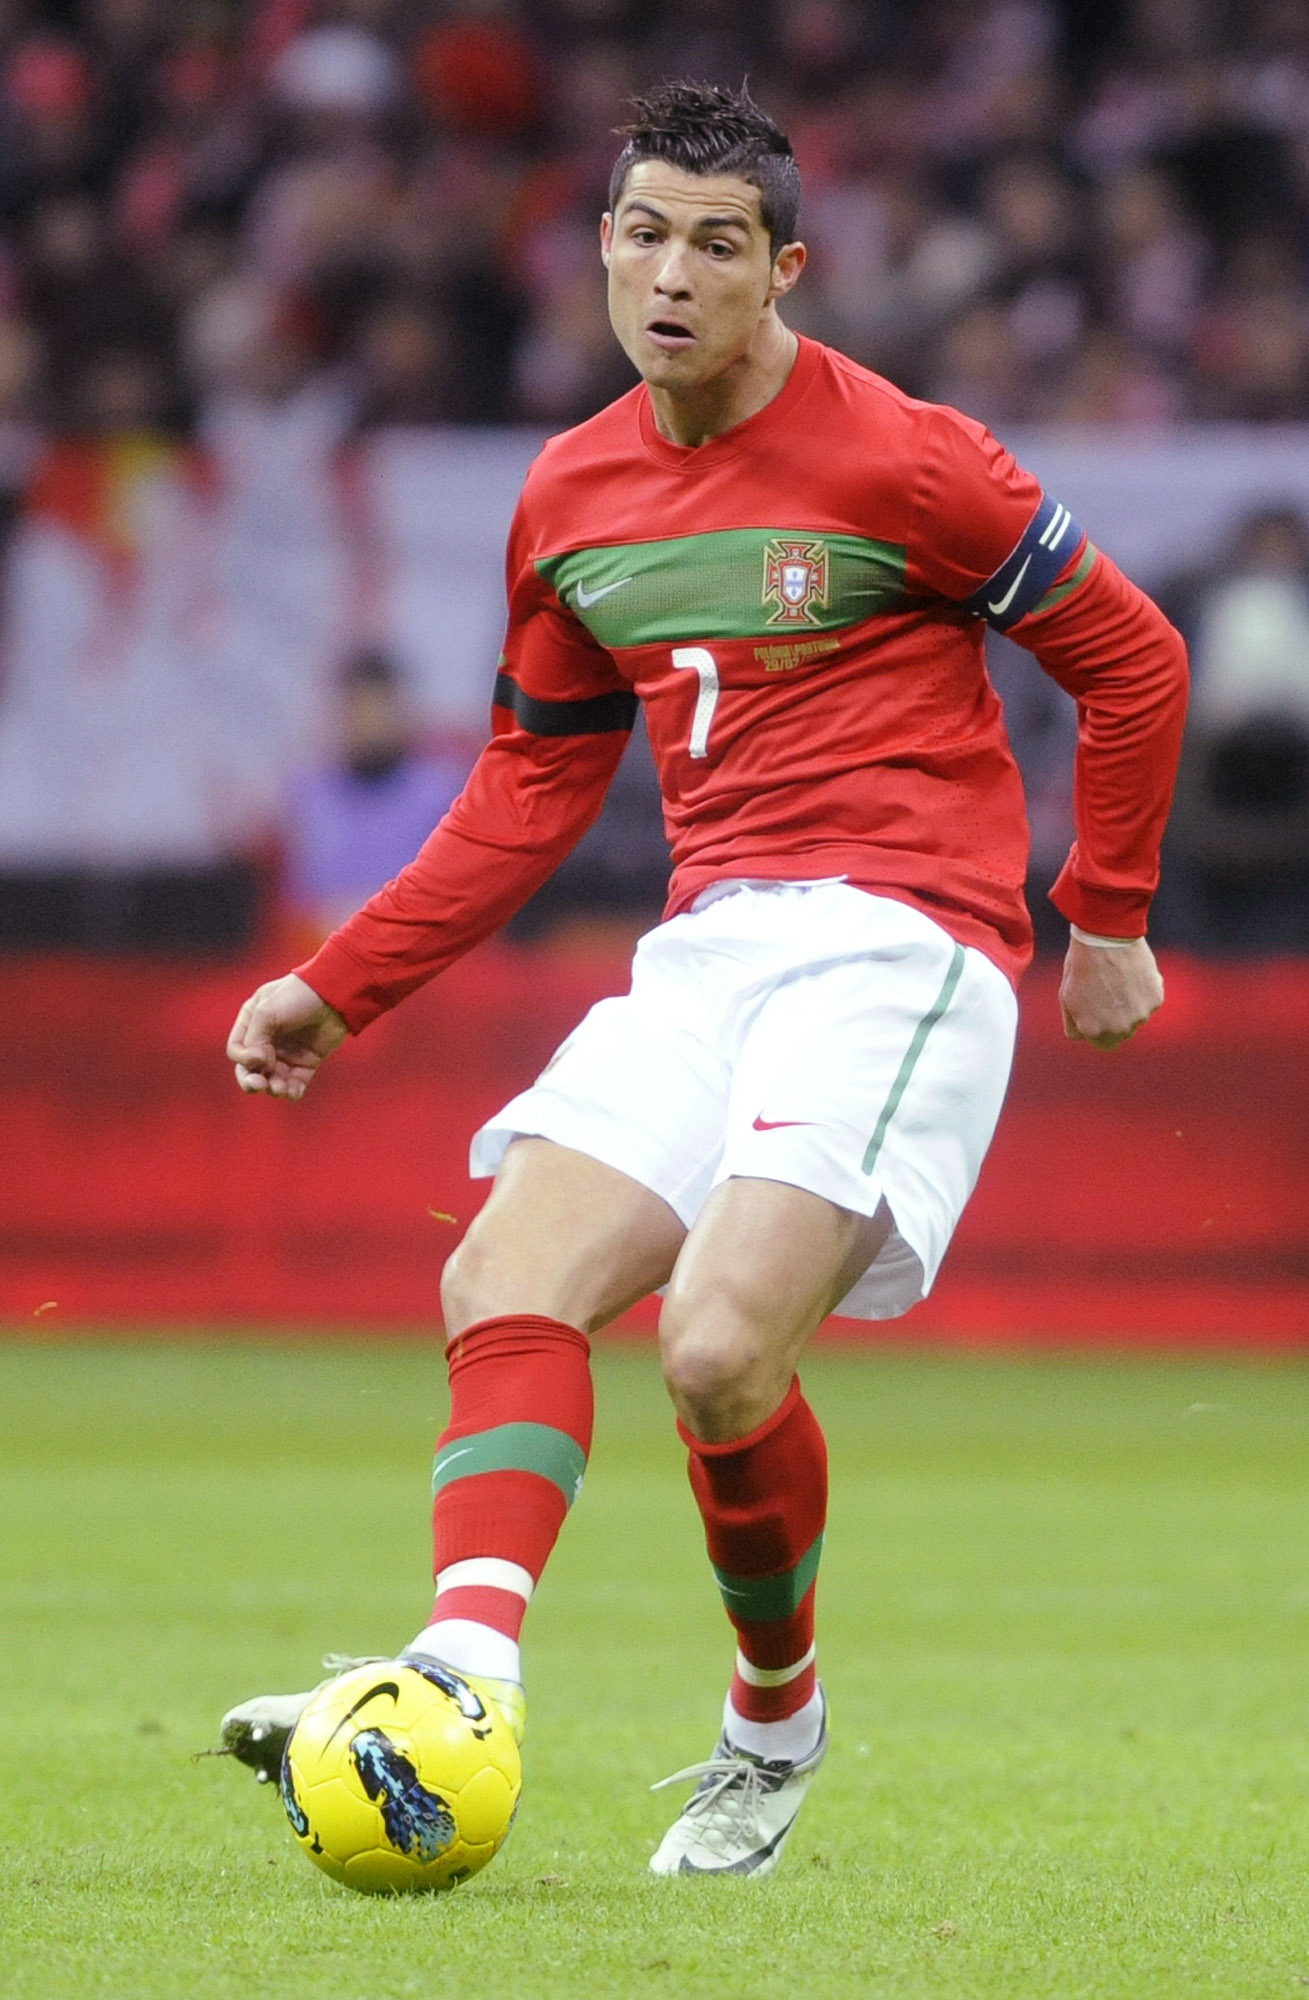 Cristiano Ronaldo, Portugal. Har öst in mål i La Liga och tagit sitt lag till guldet. Blir det likadant i sommar?